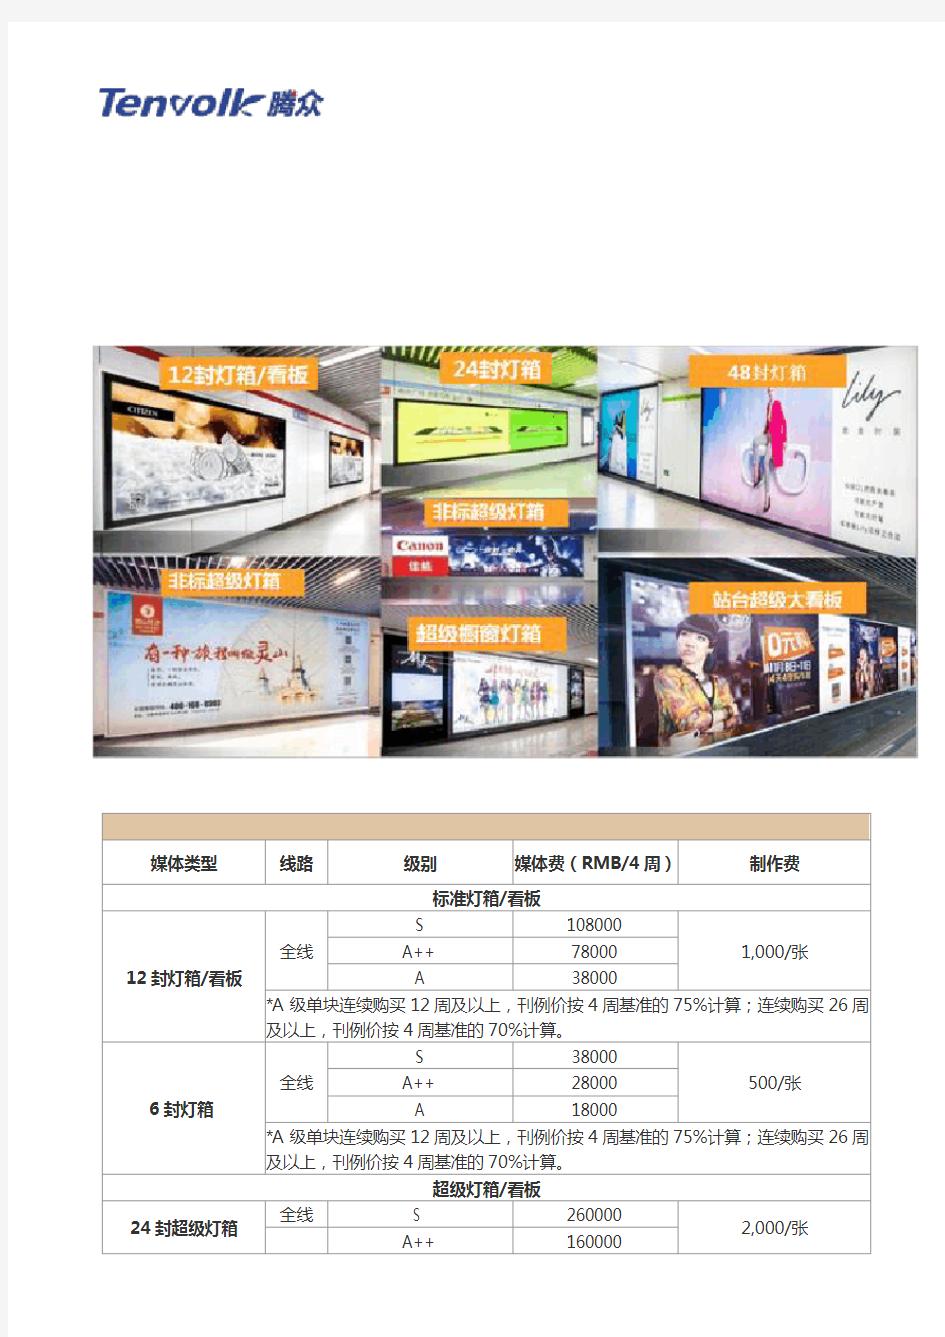 上海地铁广告价格及上海地铁广告投放